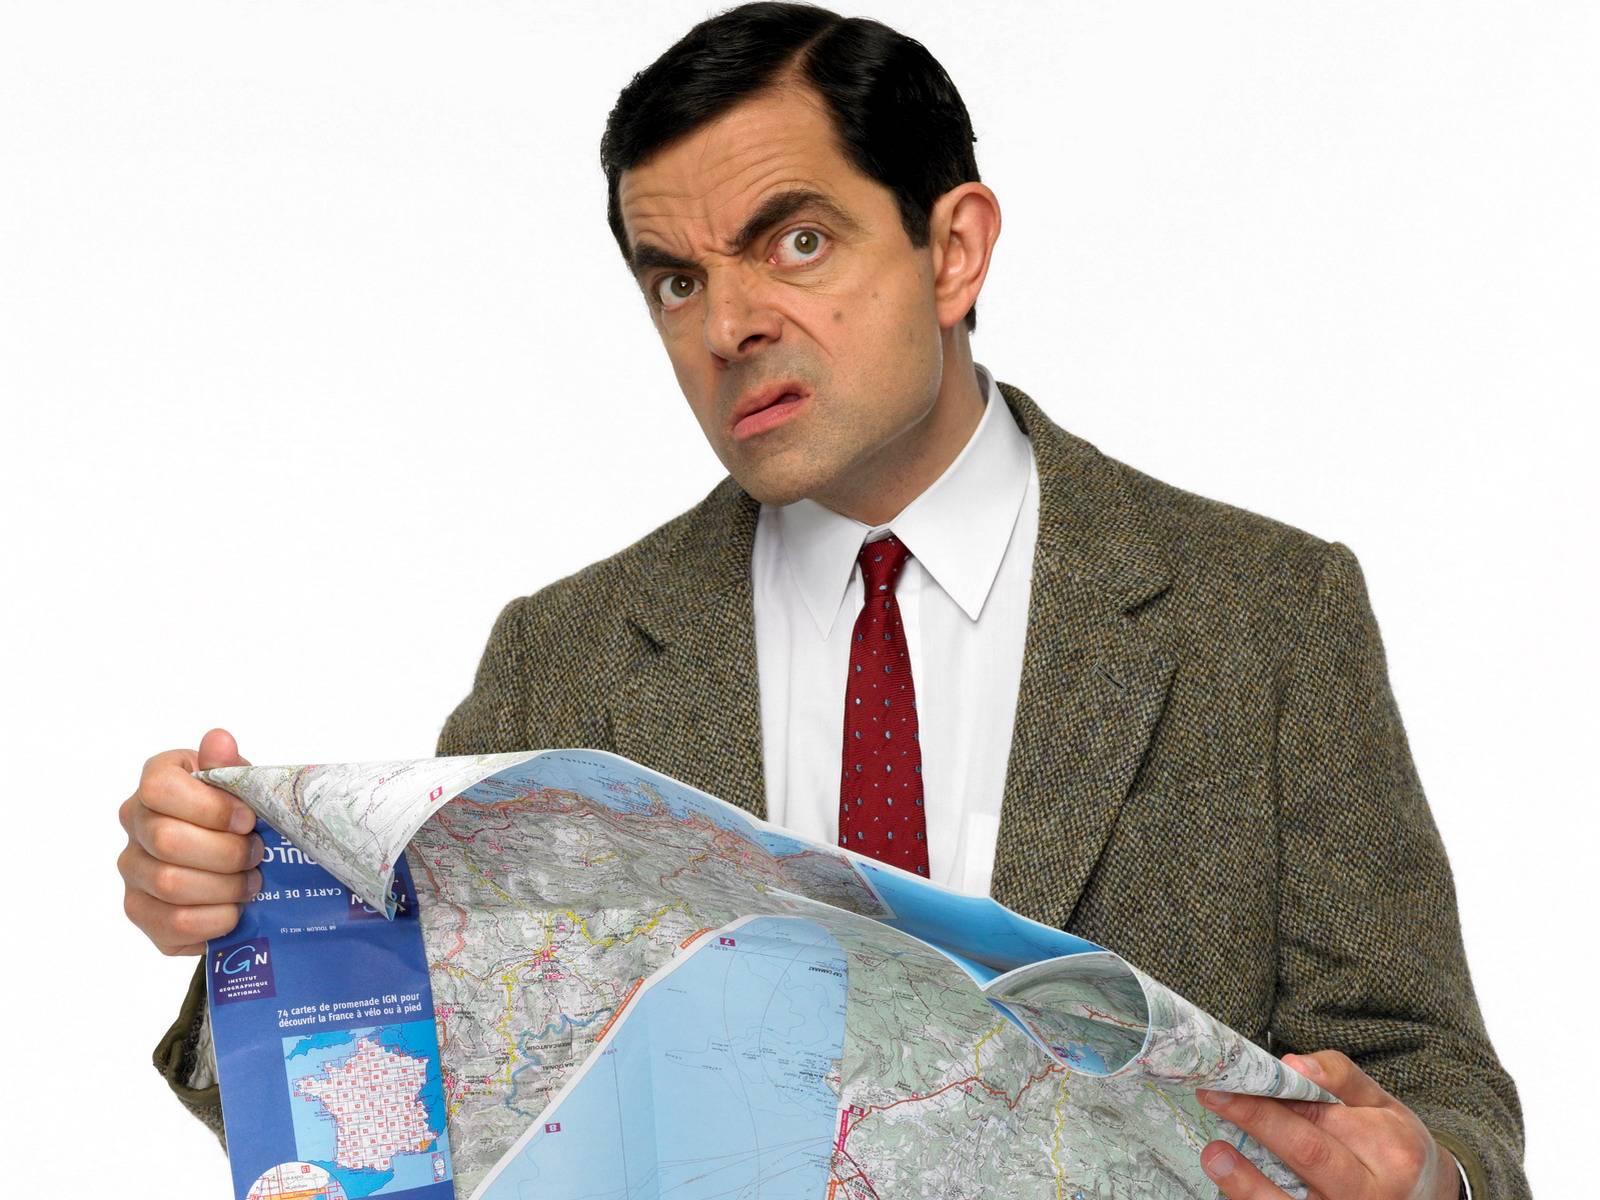 Mr Bean #8